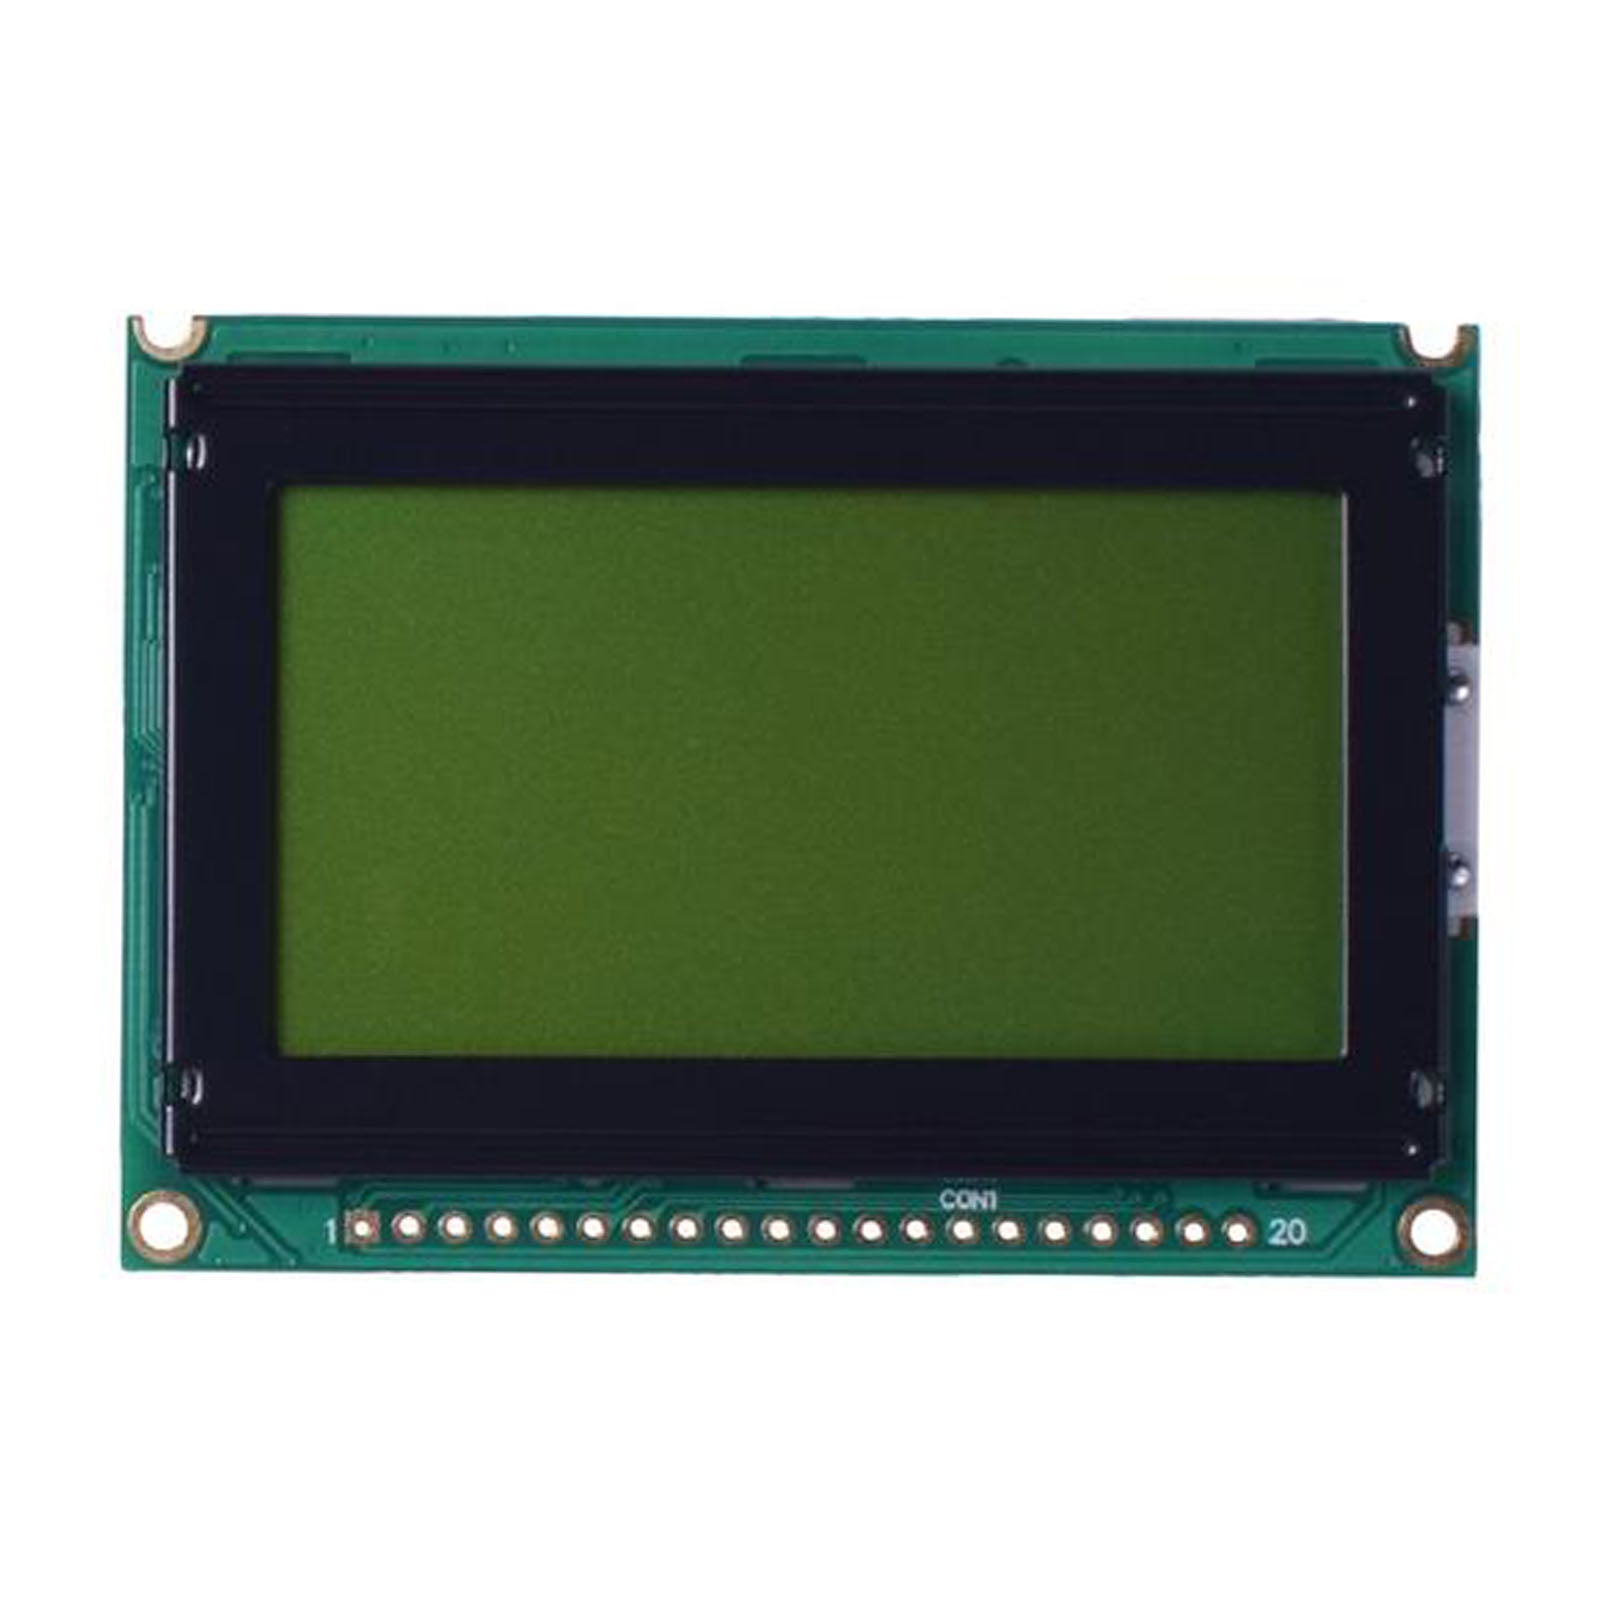 DisplayModule 2.62" 128x64 Slim Graphic LCD - MCU